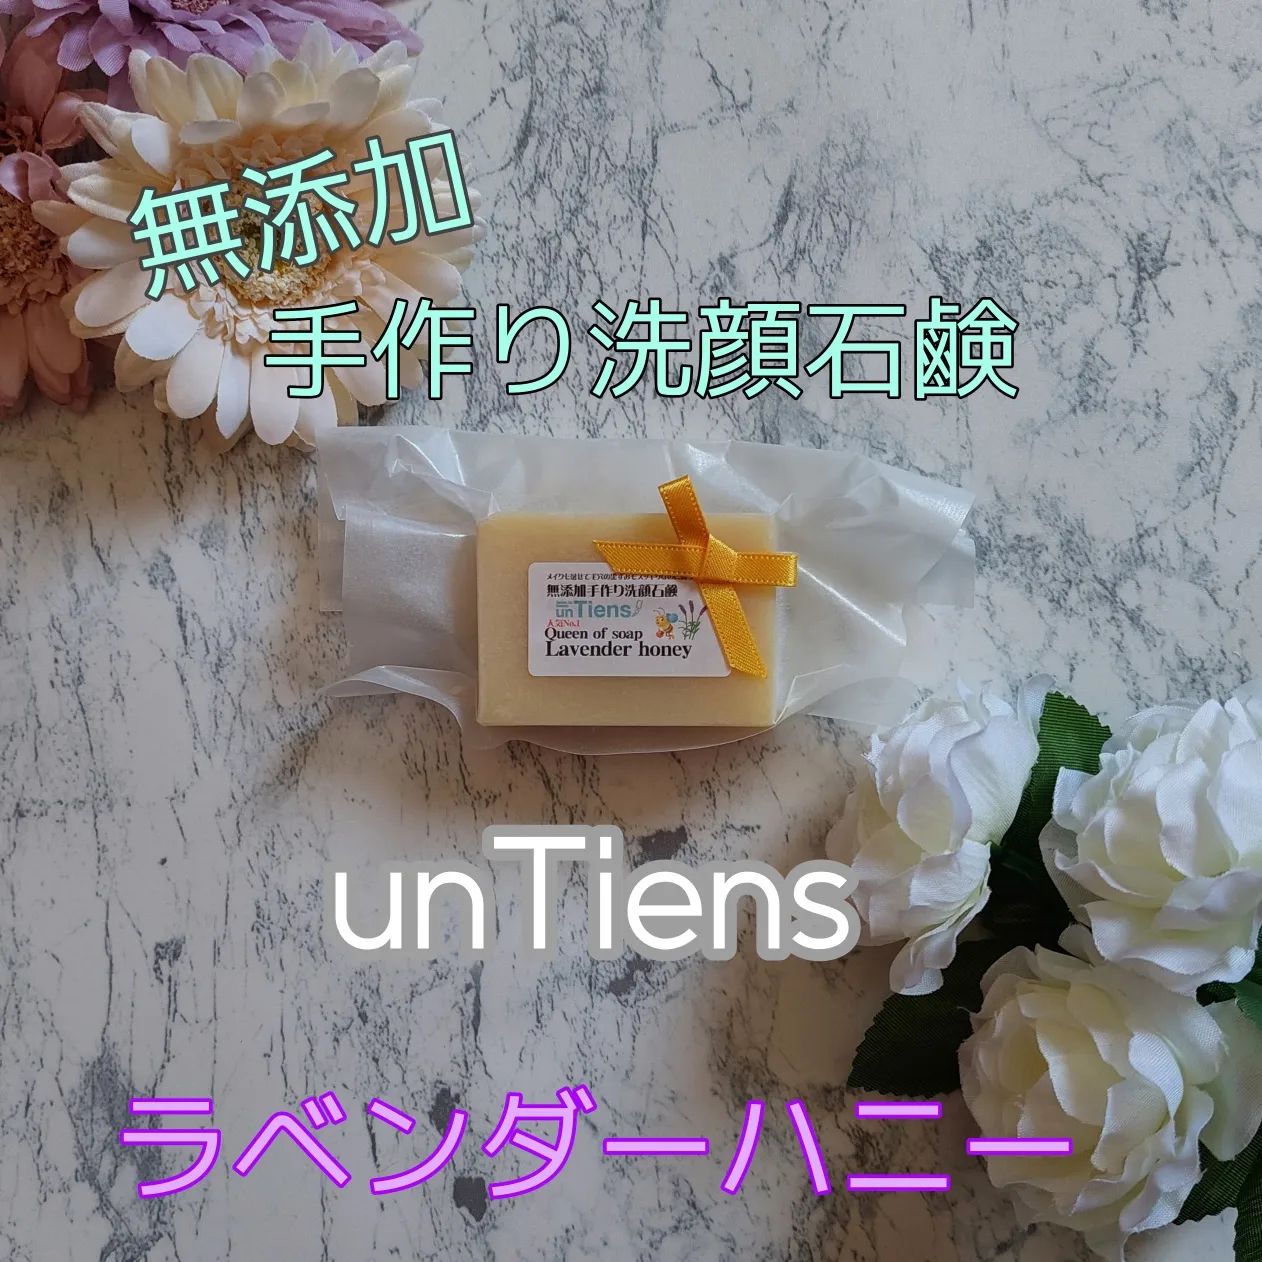 口コミ投稿：unTiens(アンティアン)さんの無添加手作り洗顔石鹸【ラベンダーハニー】を使用してみ…